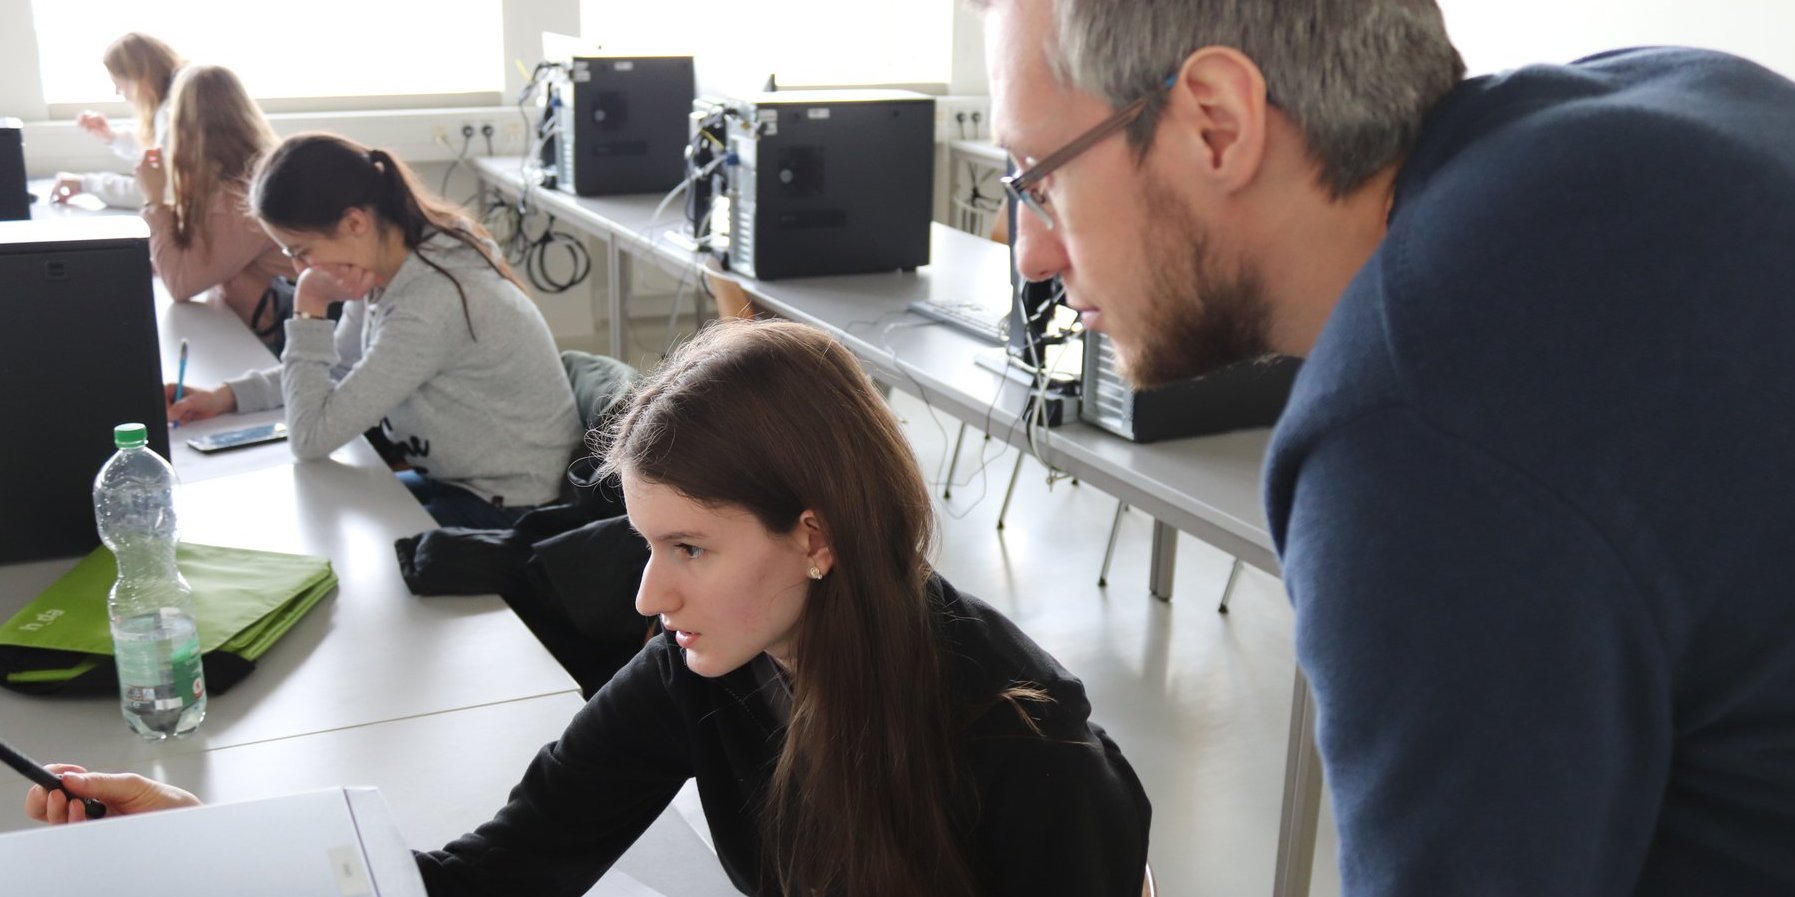 Ein Laboringenieur hört sich die Frage an, die eine Teilnehmerin stellt und dabei auf den Bildschrim deutet. Im Hintergrund sind weitere junge Frauen zu sehen, die ebenfalls vor den Bildschirmen sitzen oder sich Notizen machen.